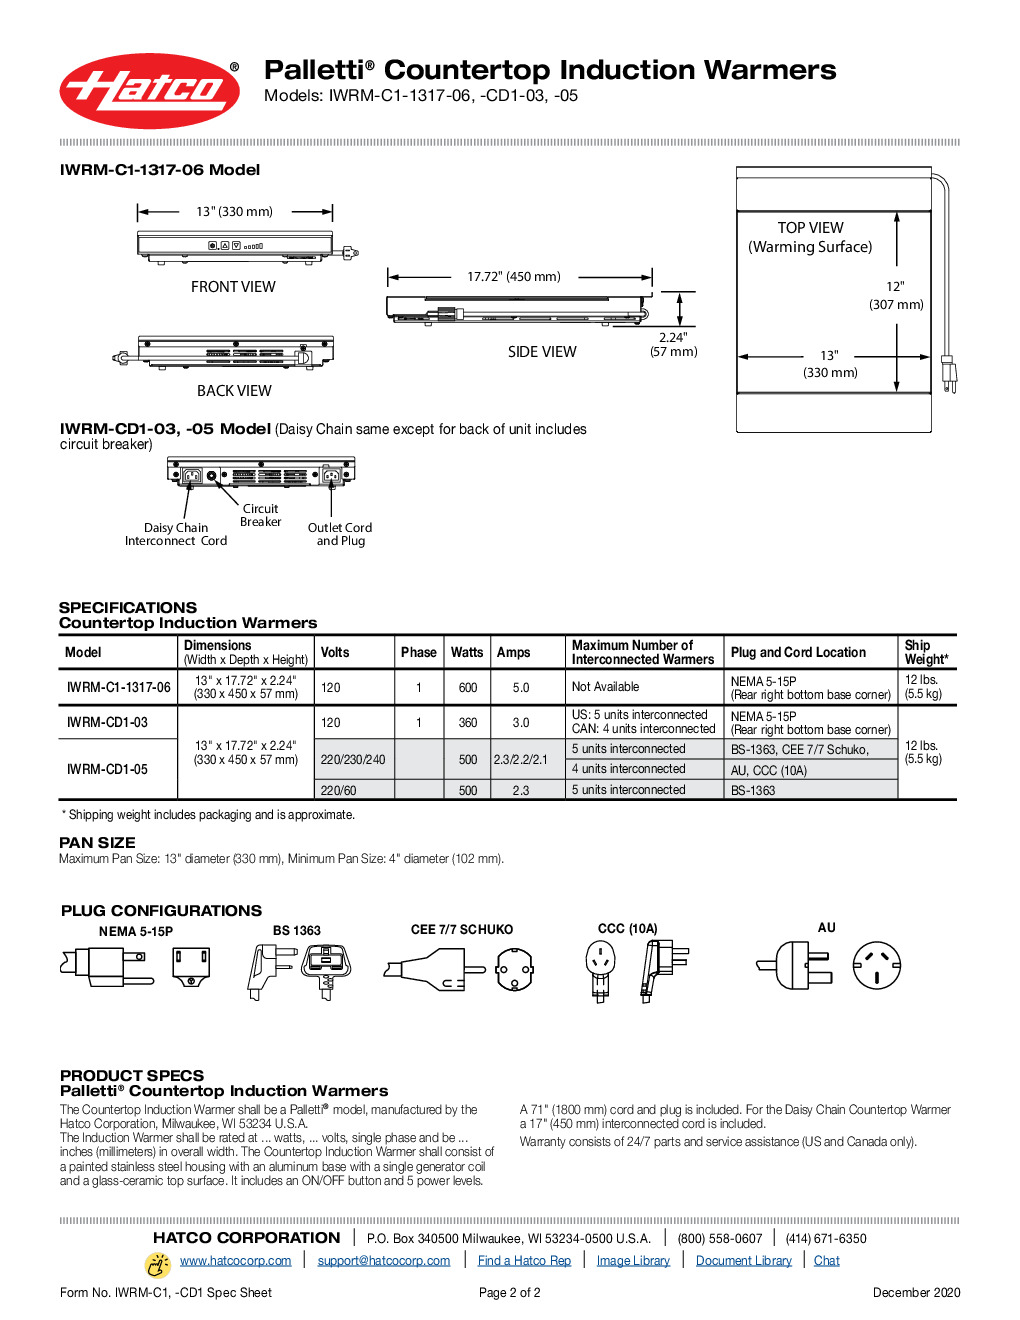 Hatco IWRM-CD1-03-QS Countertop Induction Range Warmer